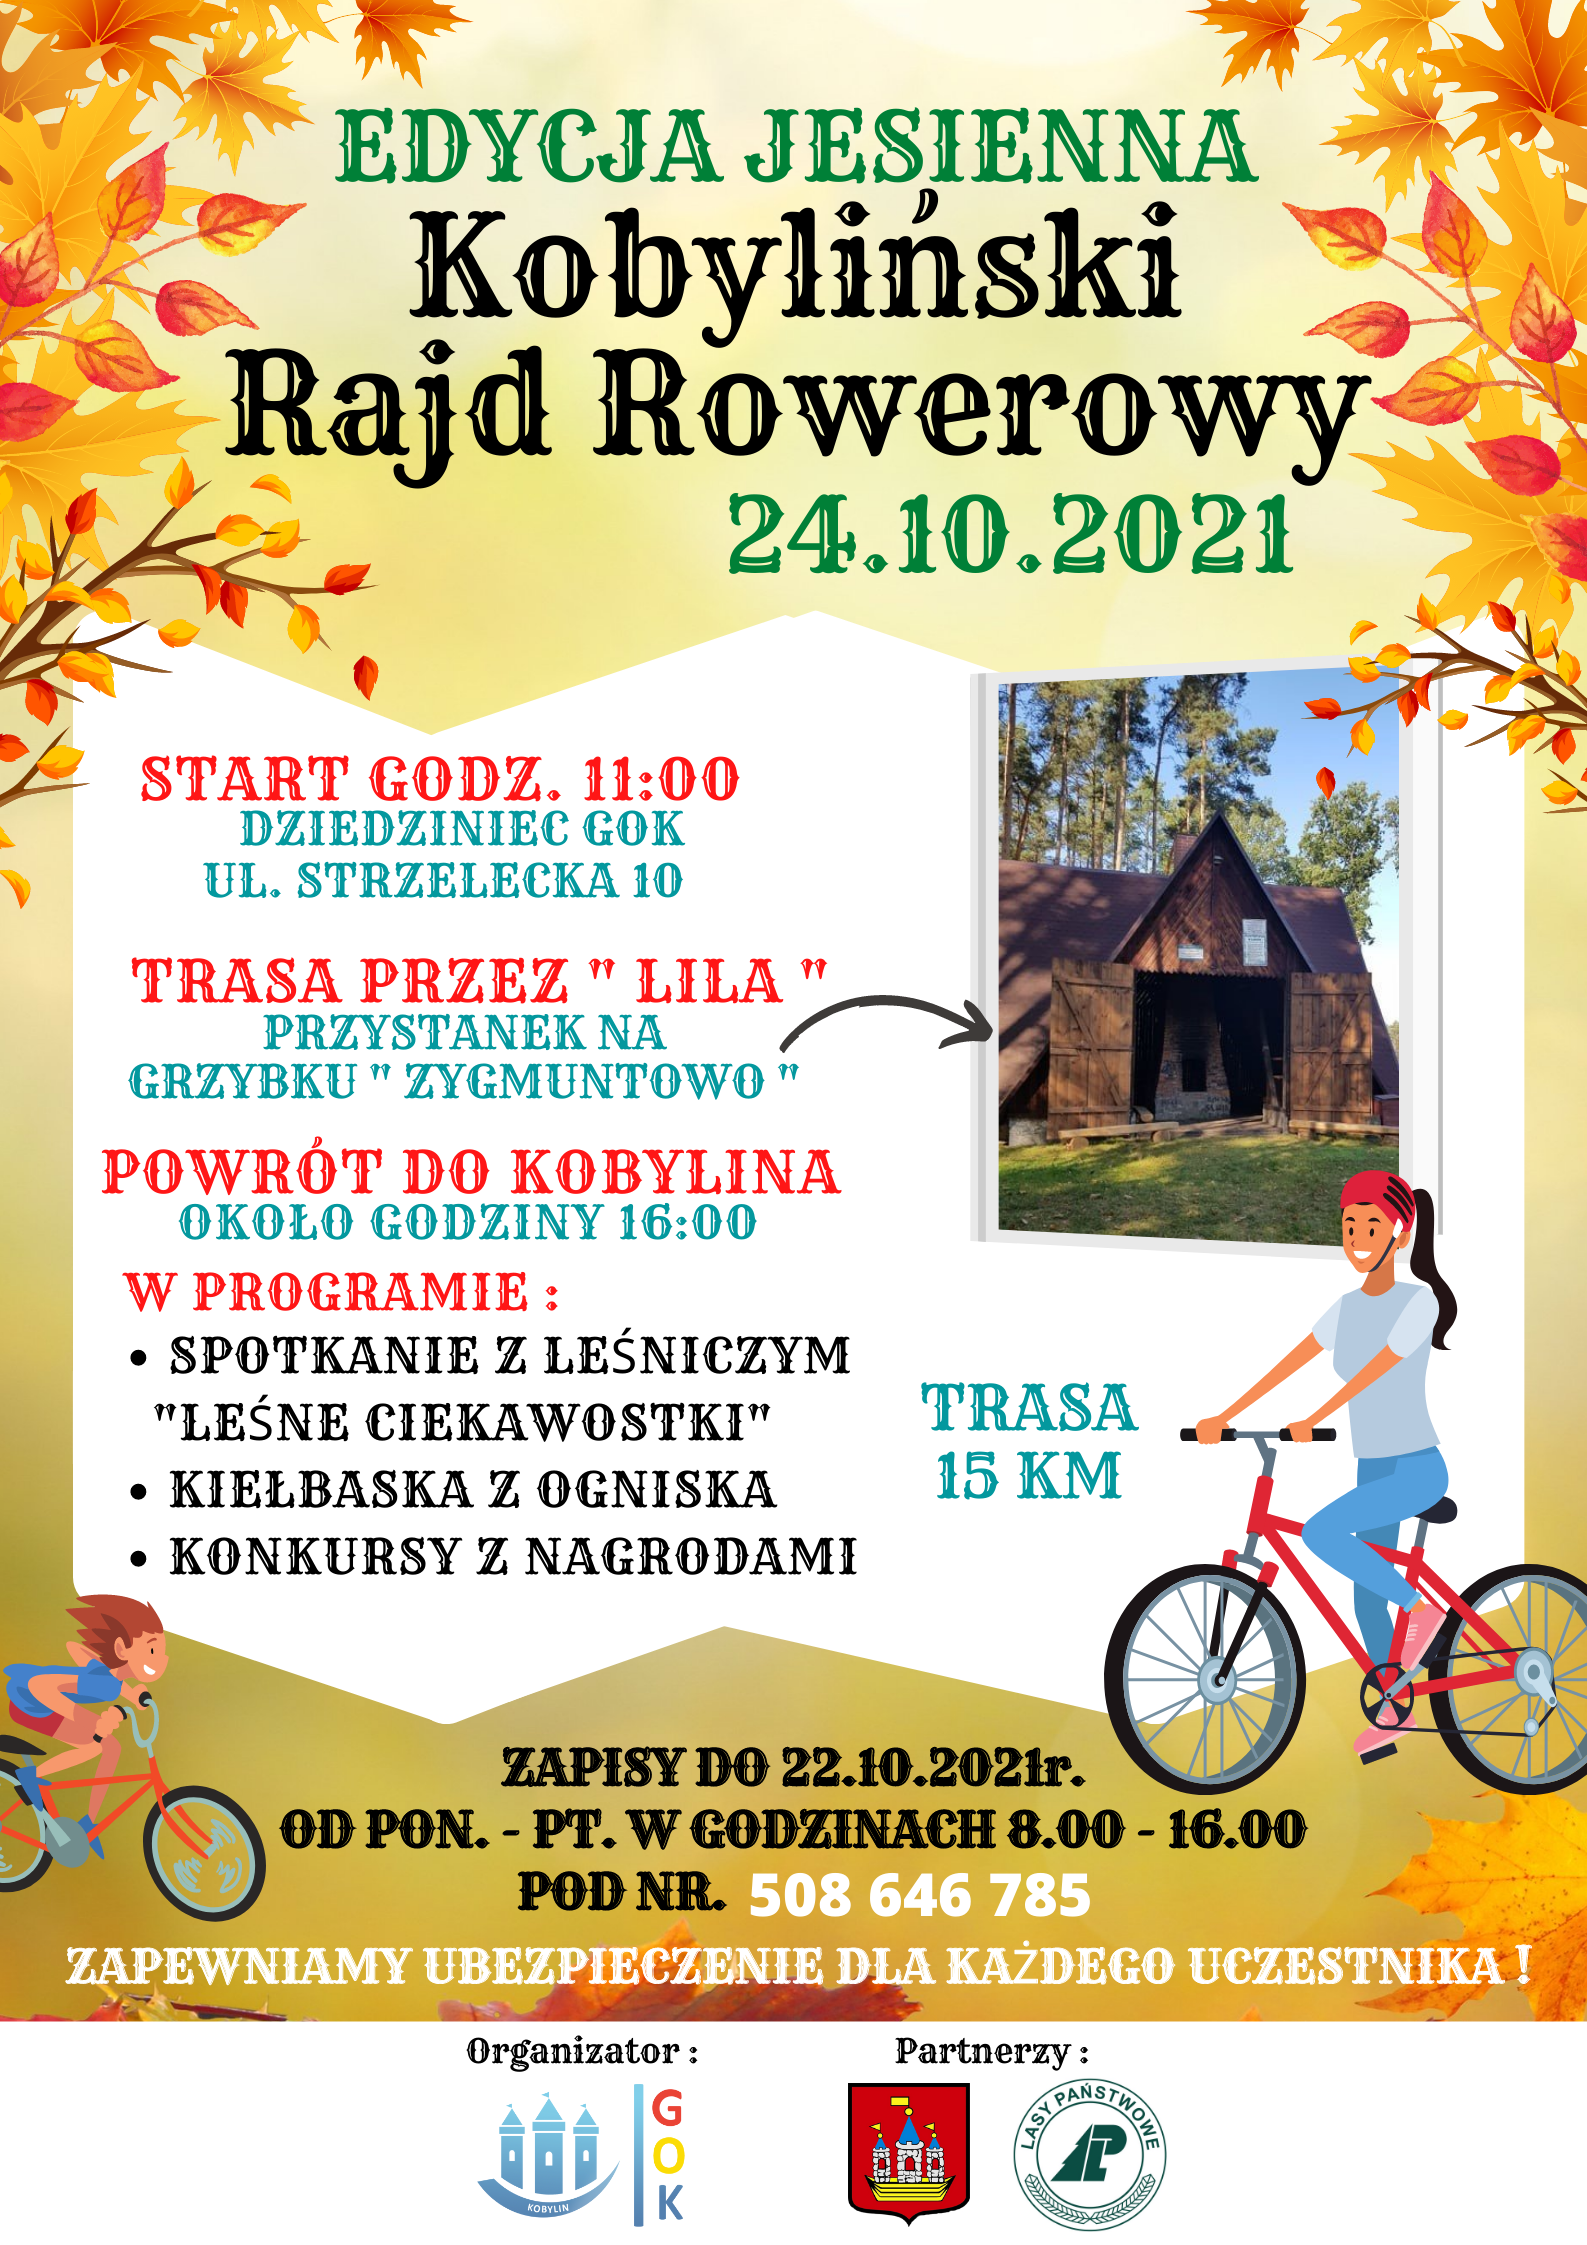 Edycja jesienna Kobyliński Rajd Rowerowy -24.10.2021